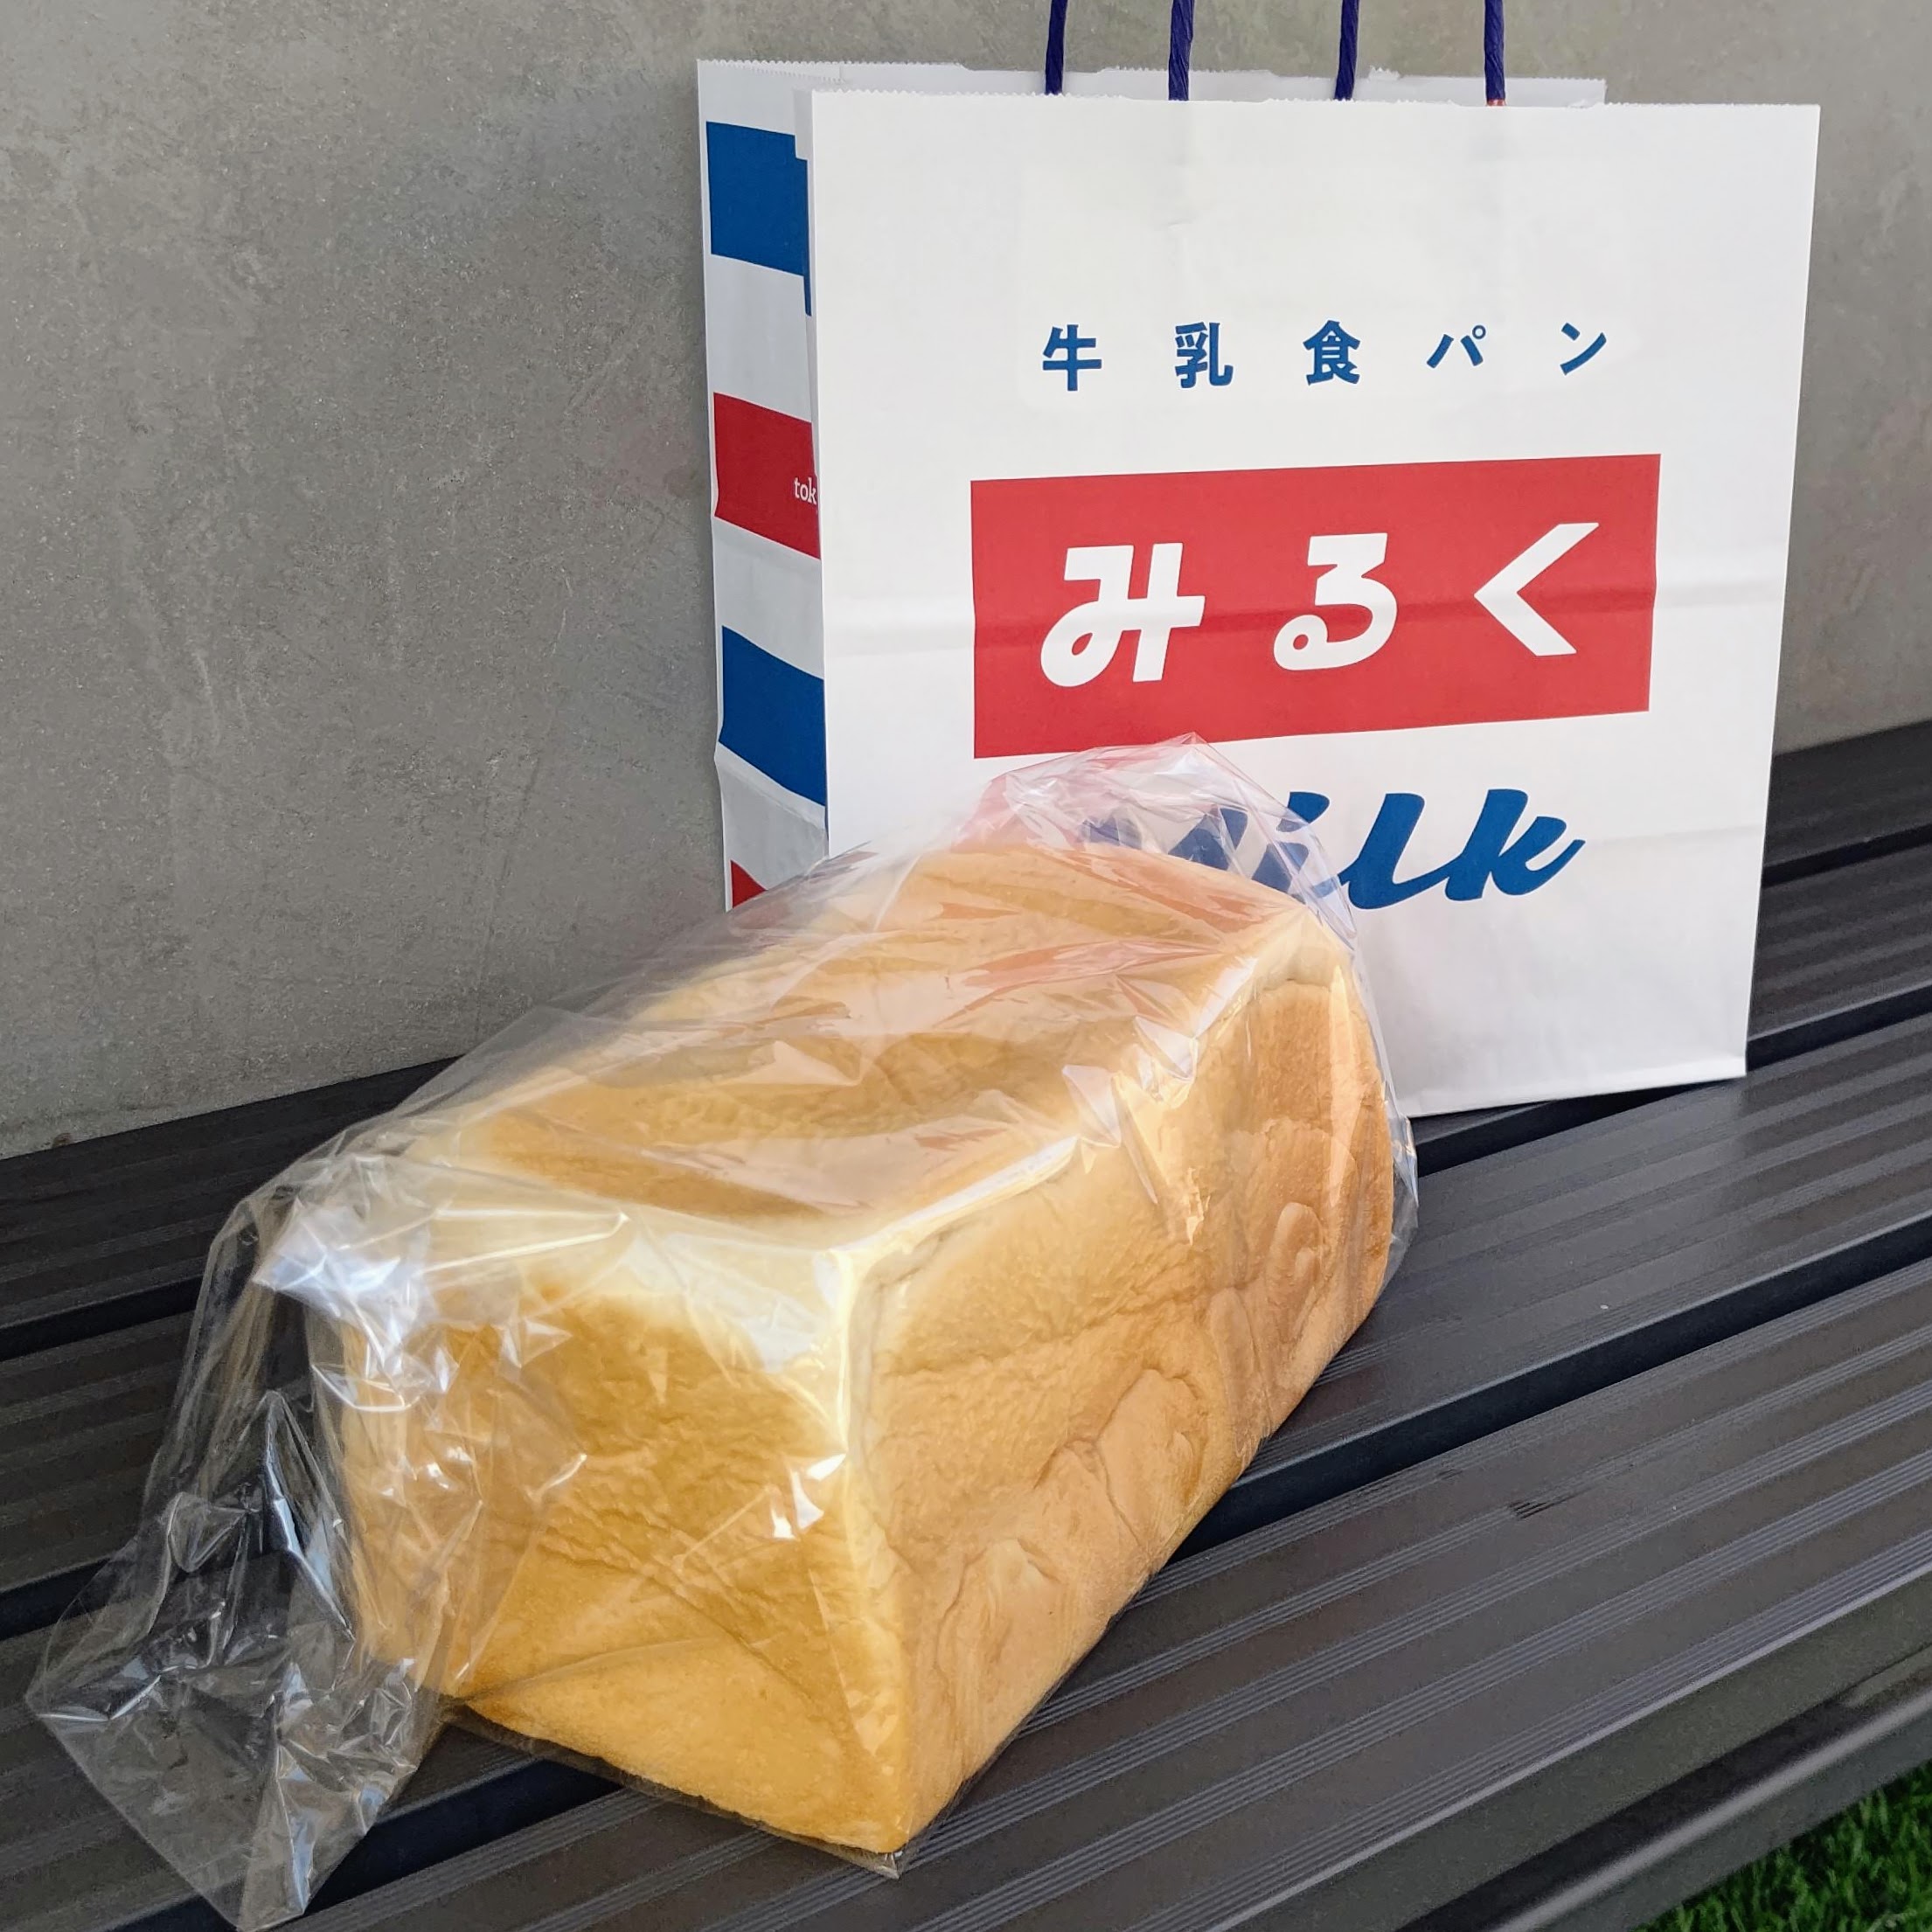 東京都足立区 牛乳食パン専門店 みるく 東京みるく食パン